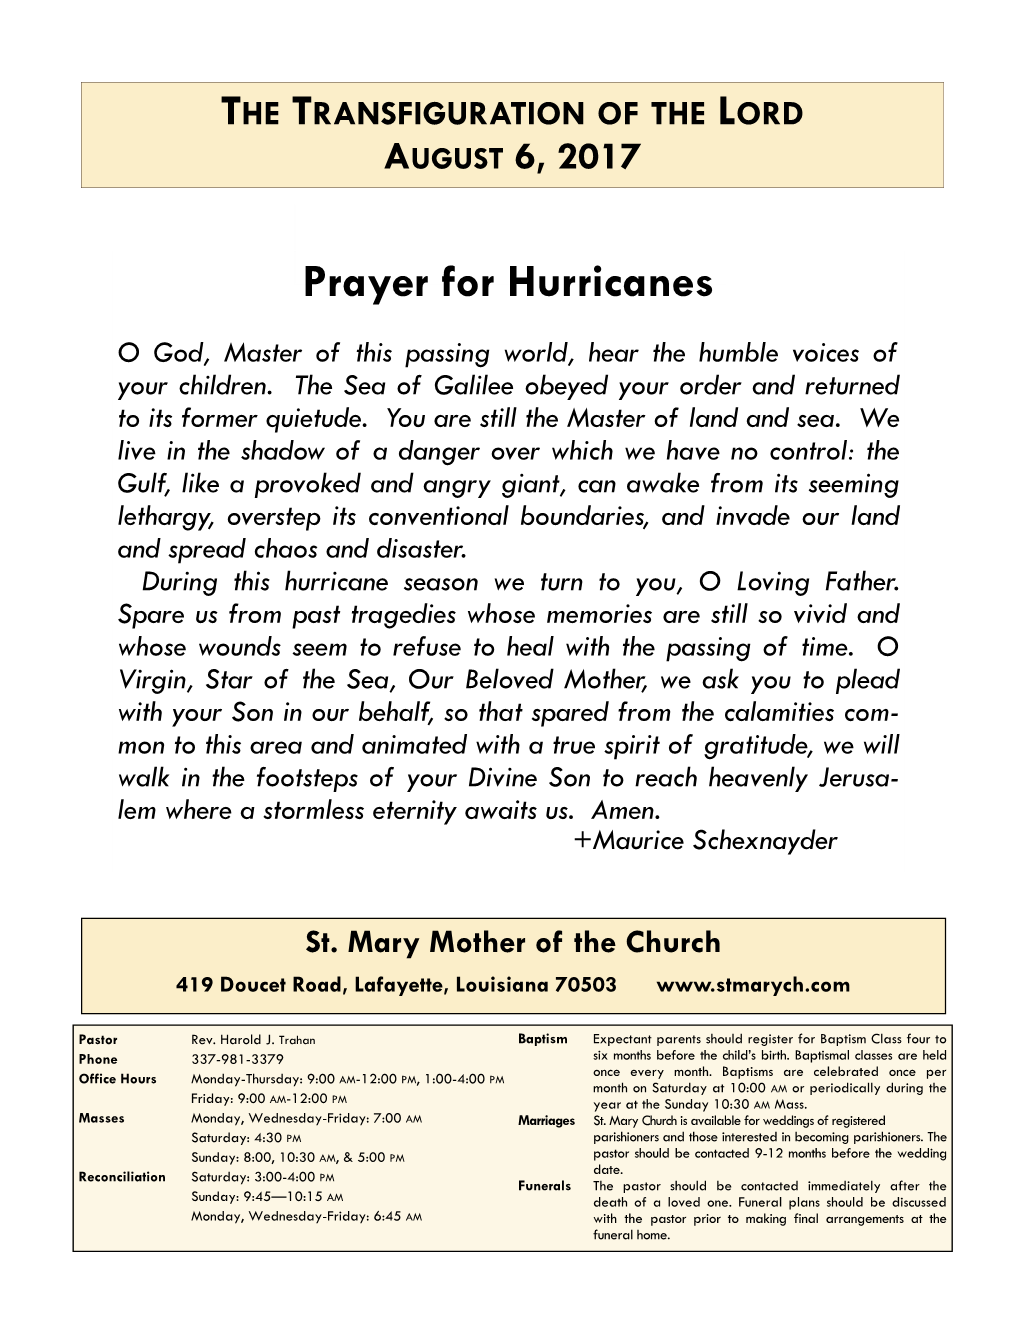 Prayer for Hurricanes